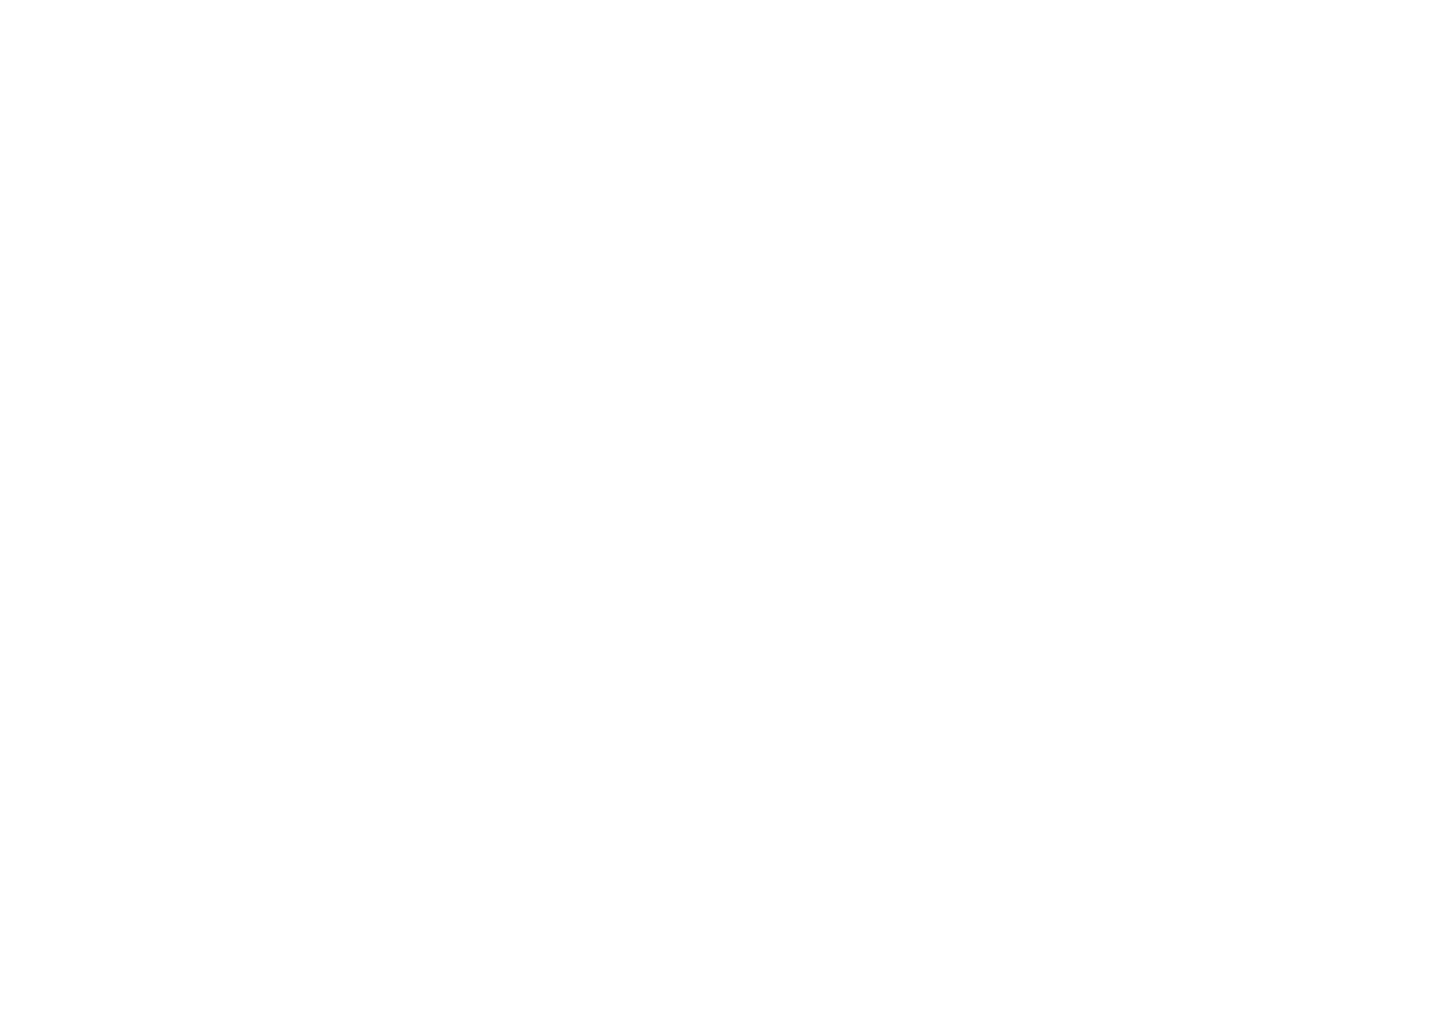 平沢製餡所の理念カテゴリー